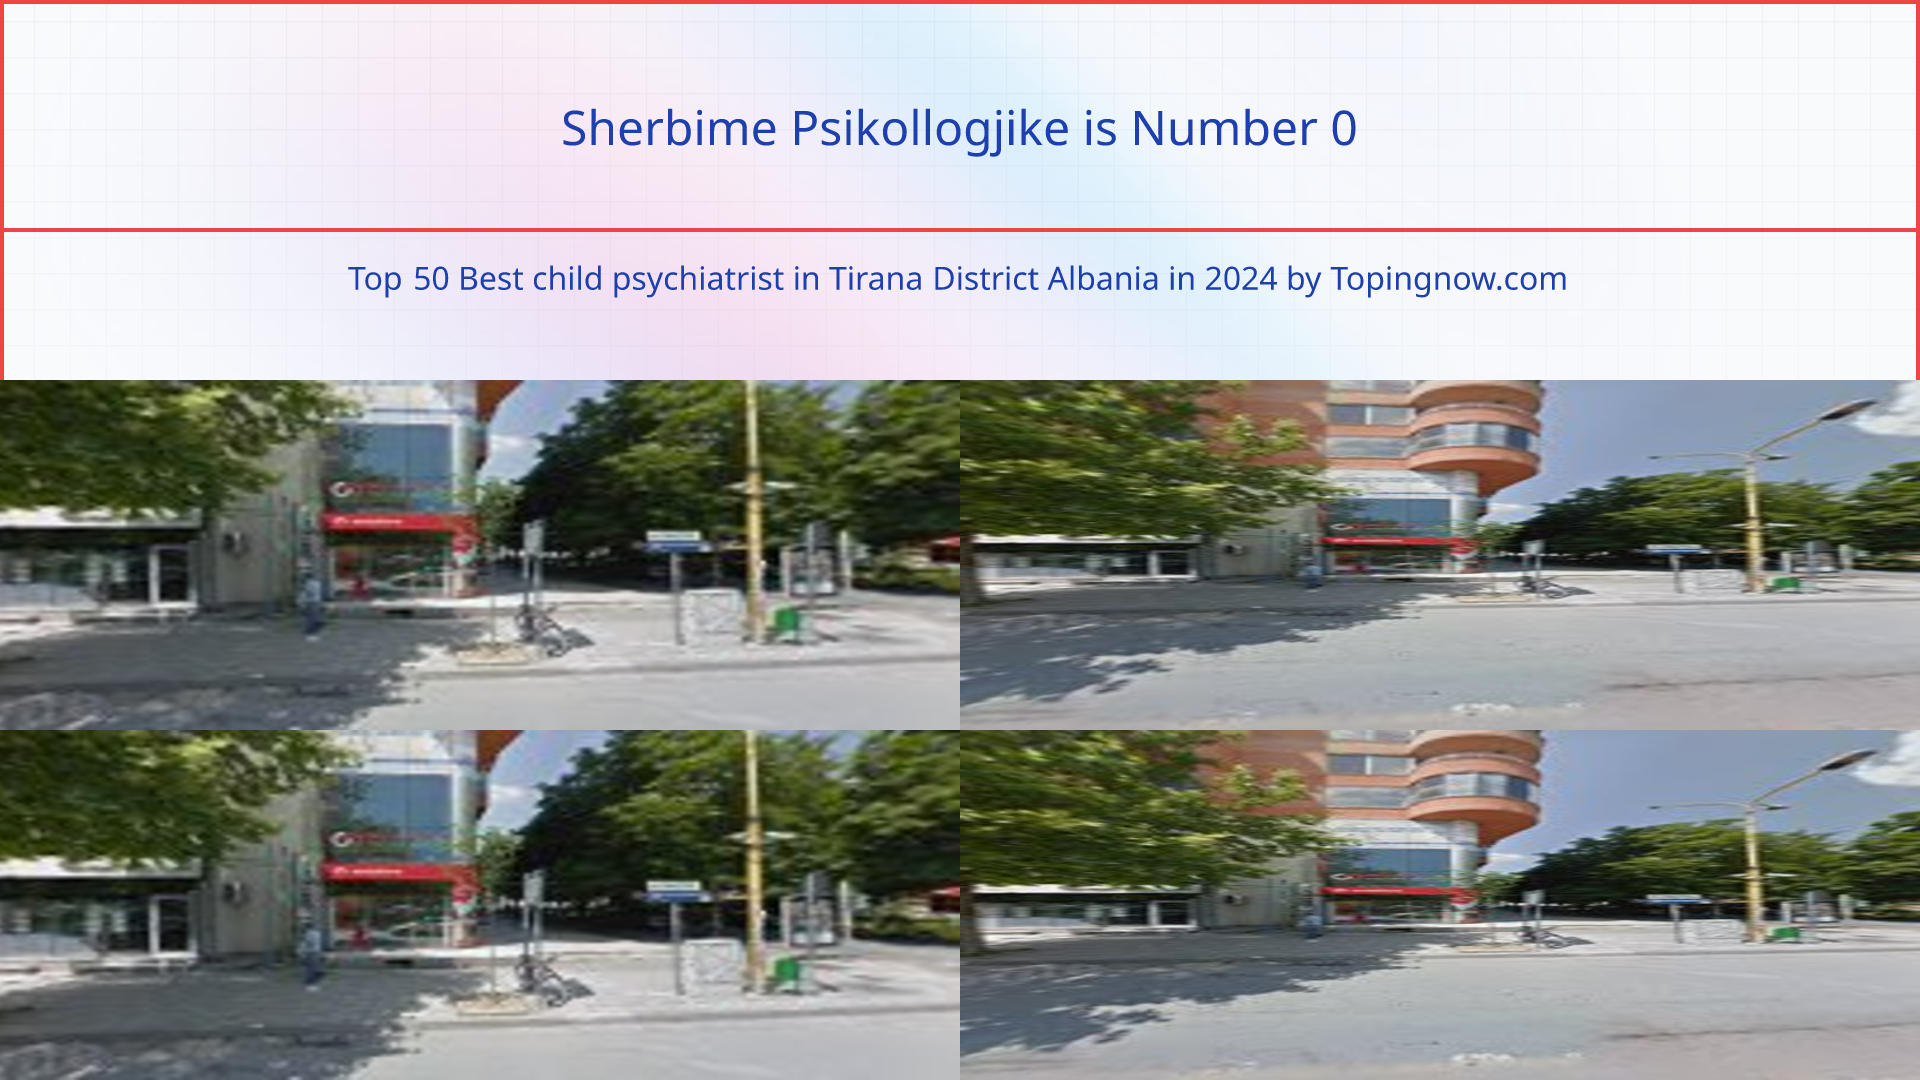 Sherbime Psikollogjike: Top 50 Best child psychiatrist in Tirana District Albania in 2024